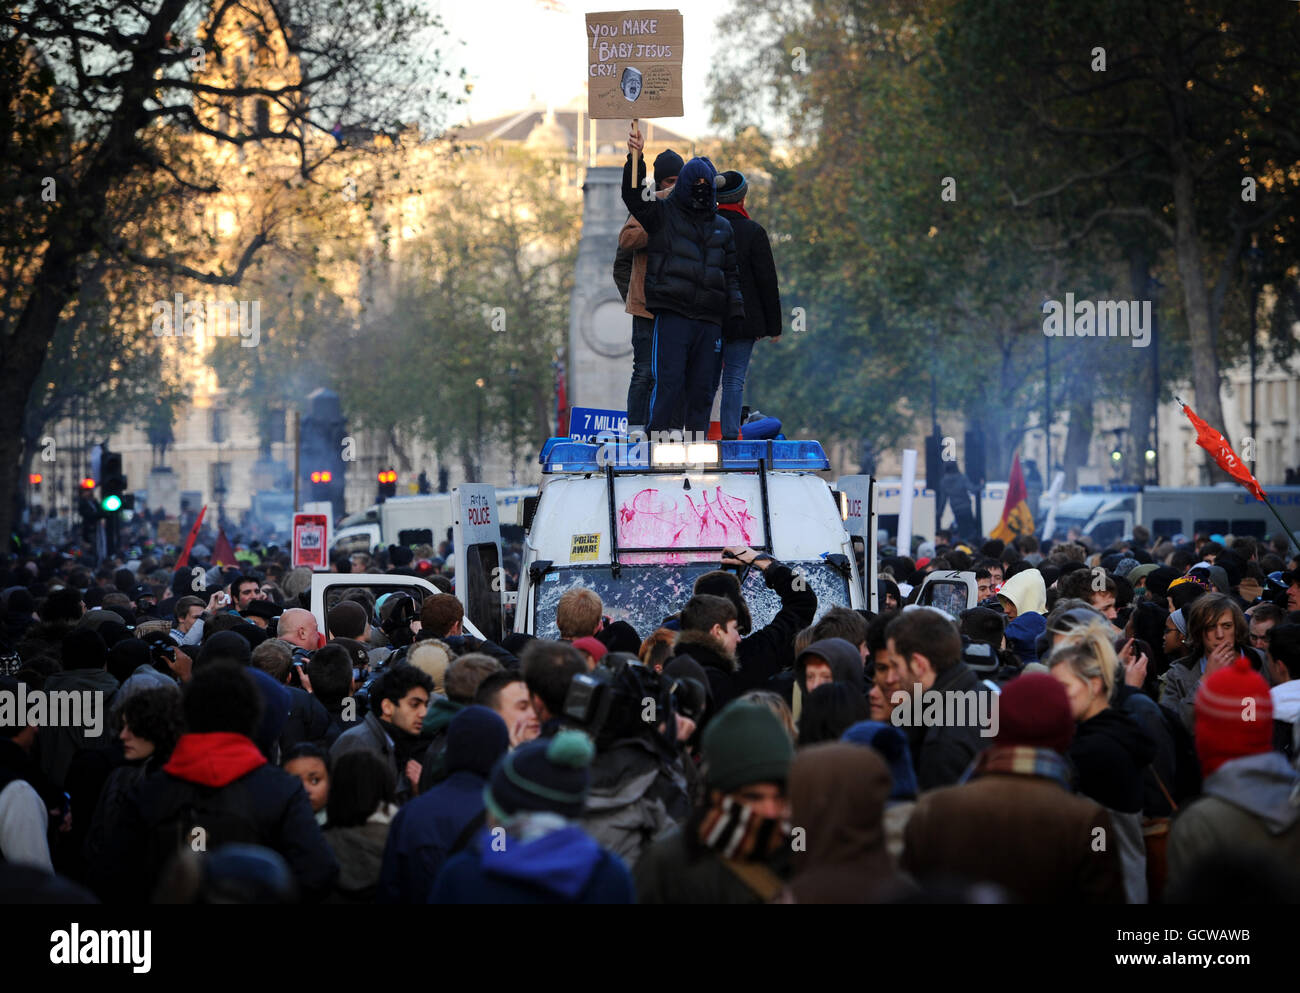 Lors d'une marche étudiante contre des coupures dans l'éducation du gouvernement, des manifestants se tiennent sur une fourgonnette de police entourée de manifestants à Londres. Banque D'Images